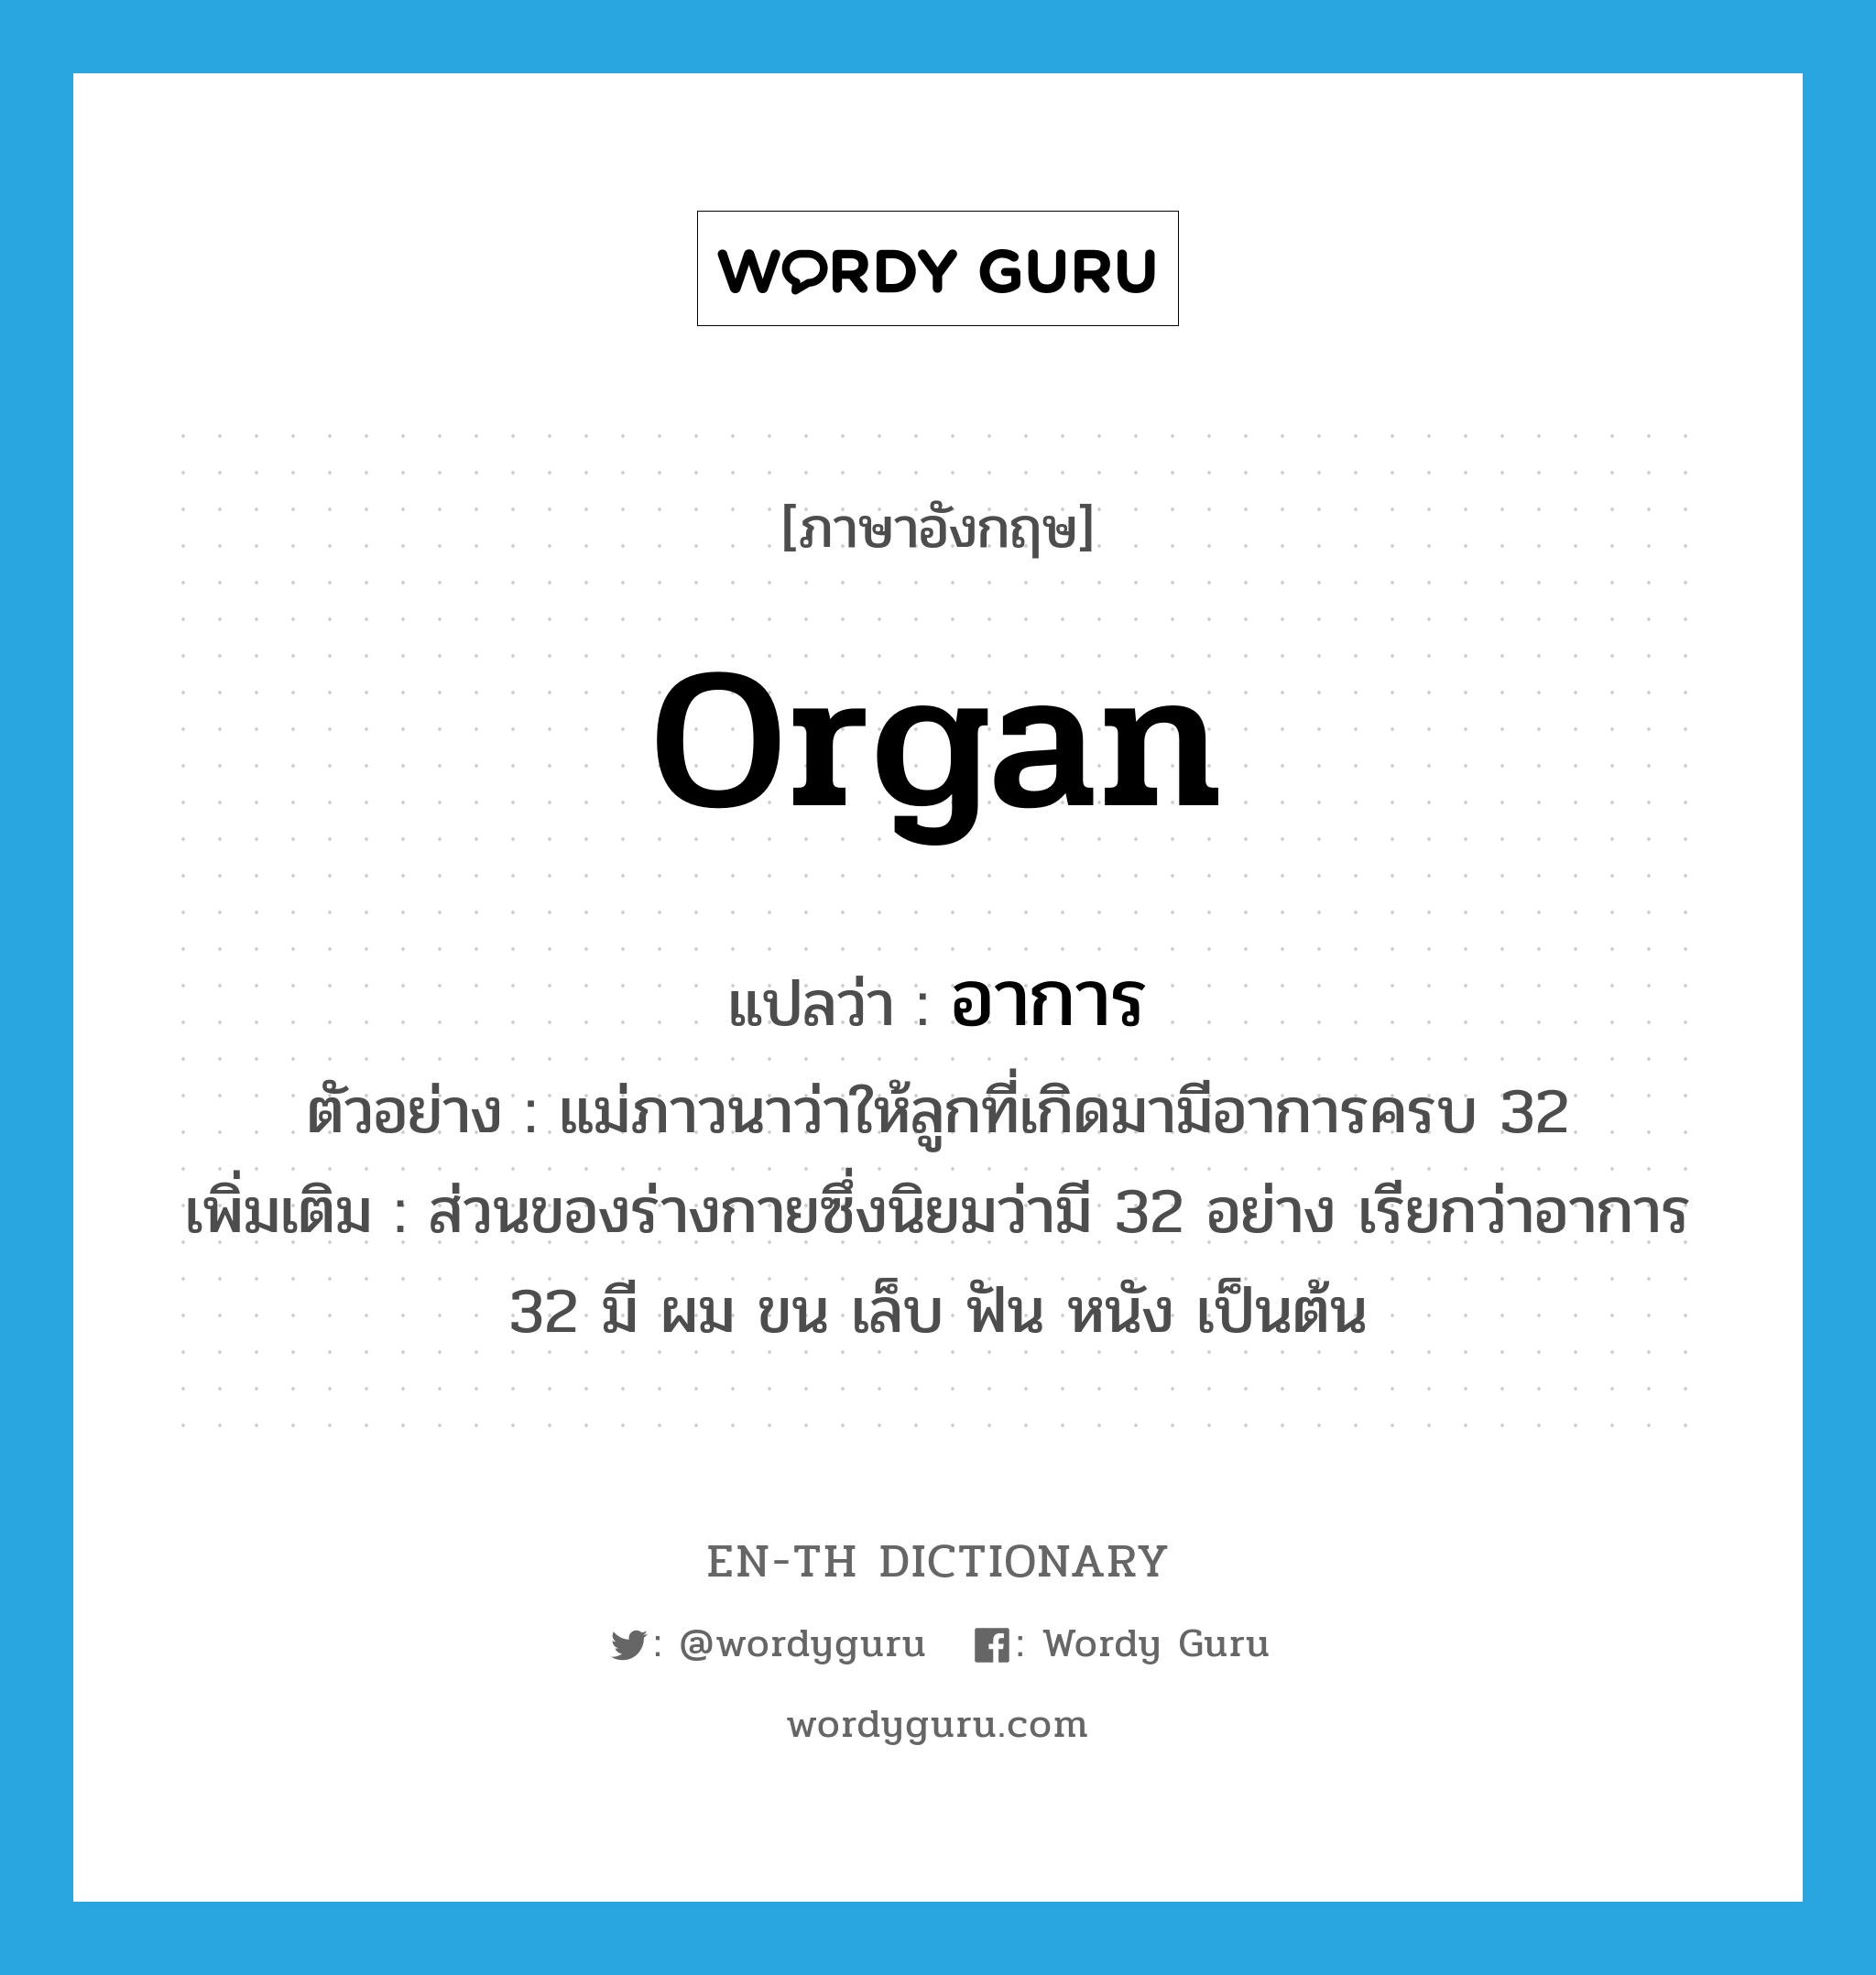 organ แปลว่า?, คำศัพท์ภาษาอังกฤษ organ แปลว่า อาการ ประเภท N ตัวอย่าง แม่ภาวนาว่าให้ลูกที่เกิดมามีอาการครบ 32 เพิ่มเติม ส่วนของร่างกายซึ่งนิยมว่ามี 32 อย่าง เรียกว่าอาการ 32 มี ผม ขน เล็บ ฟัน หนัง เป็นต้น หมวด N